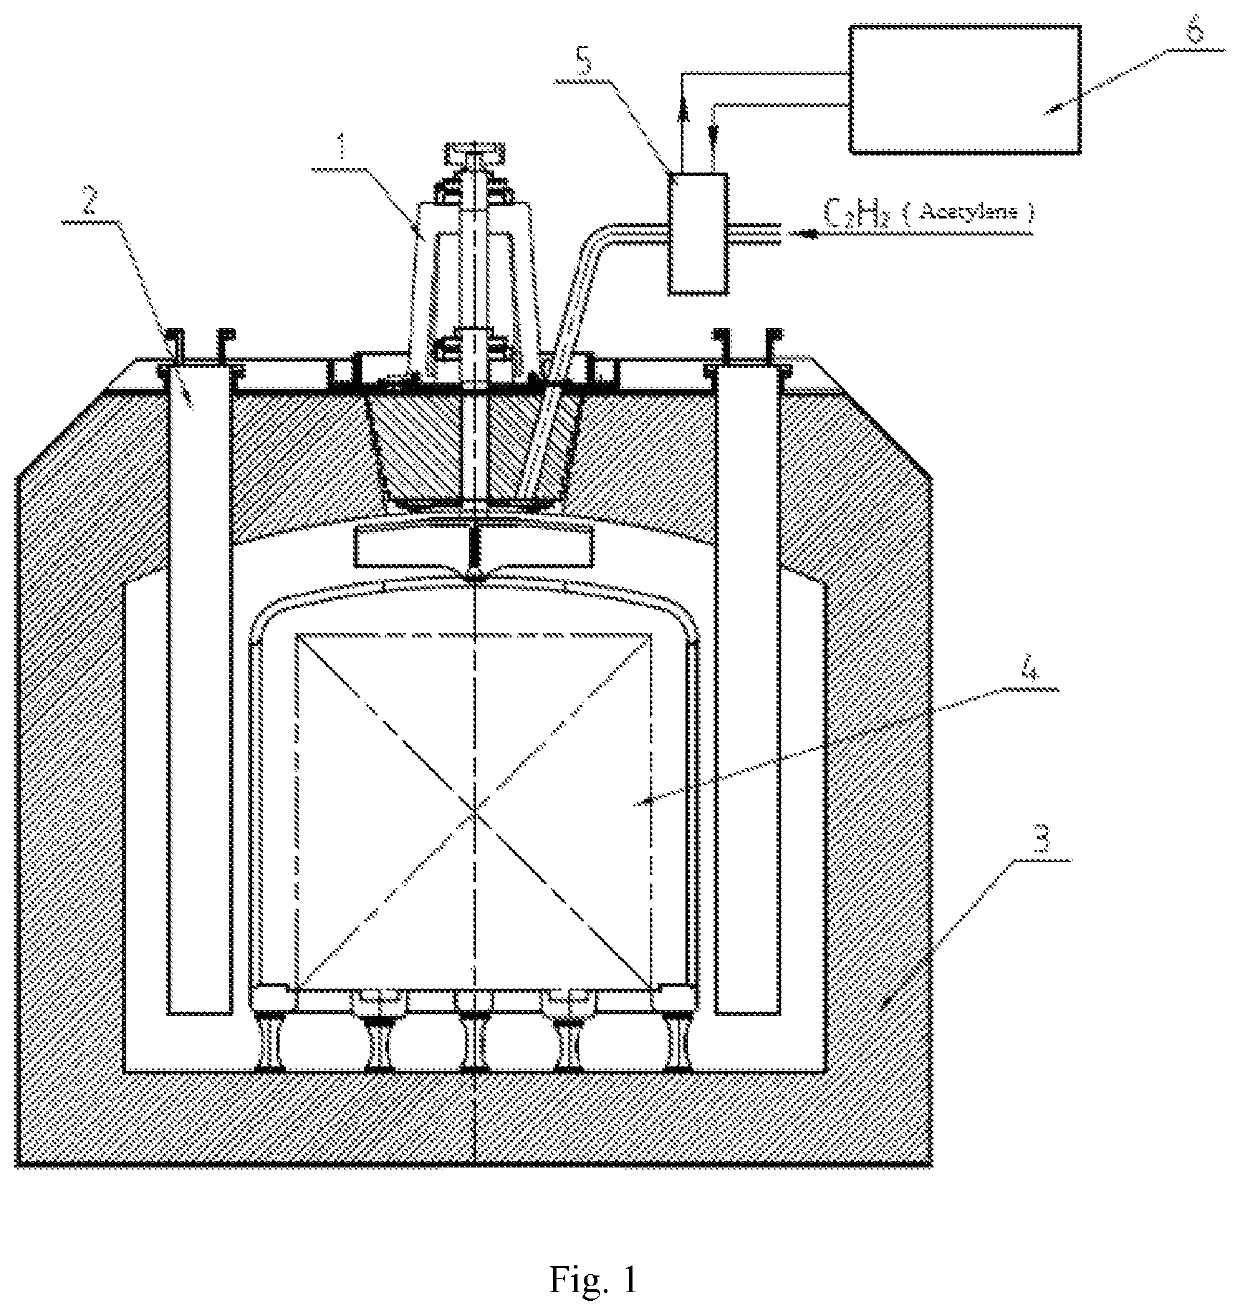 Atmospheric-pressure acetylene carburizing furnace